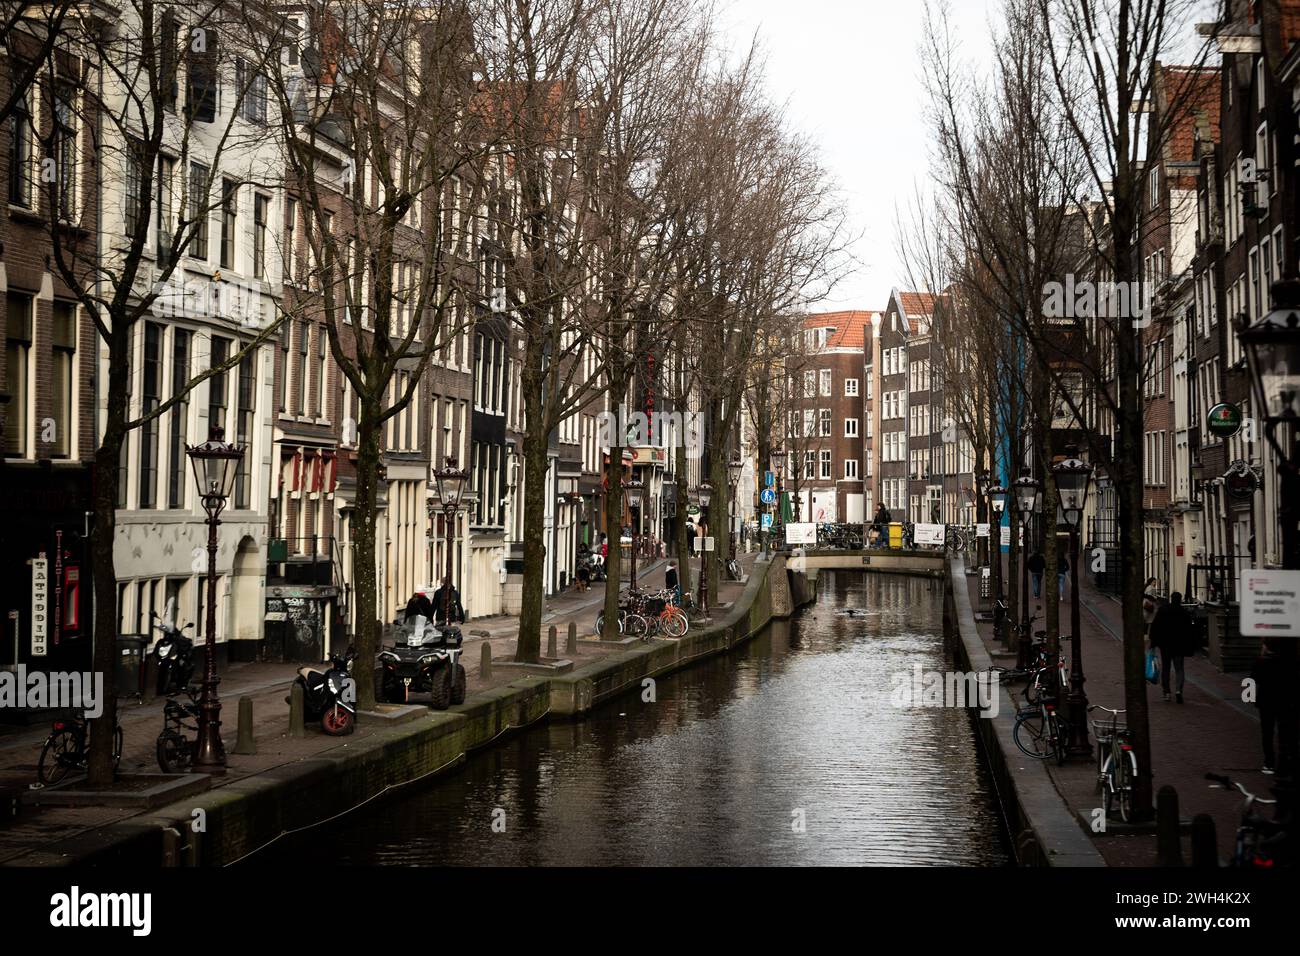 Amsterdam ist die Hauptstadt der Niederlande, bekannt für ihre reiche Geschichte, ihr künstlerisches Erbe, ihr ausgeklügeltes Kanalsystem und ihre engen Häuser. Stockfoto